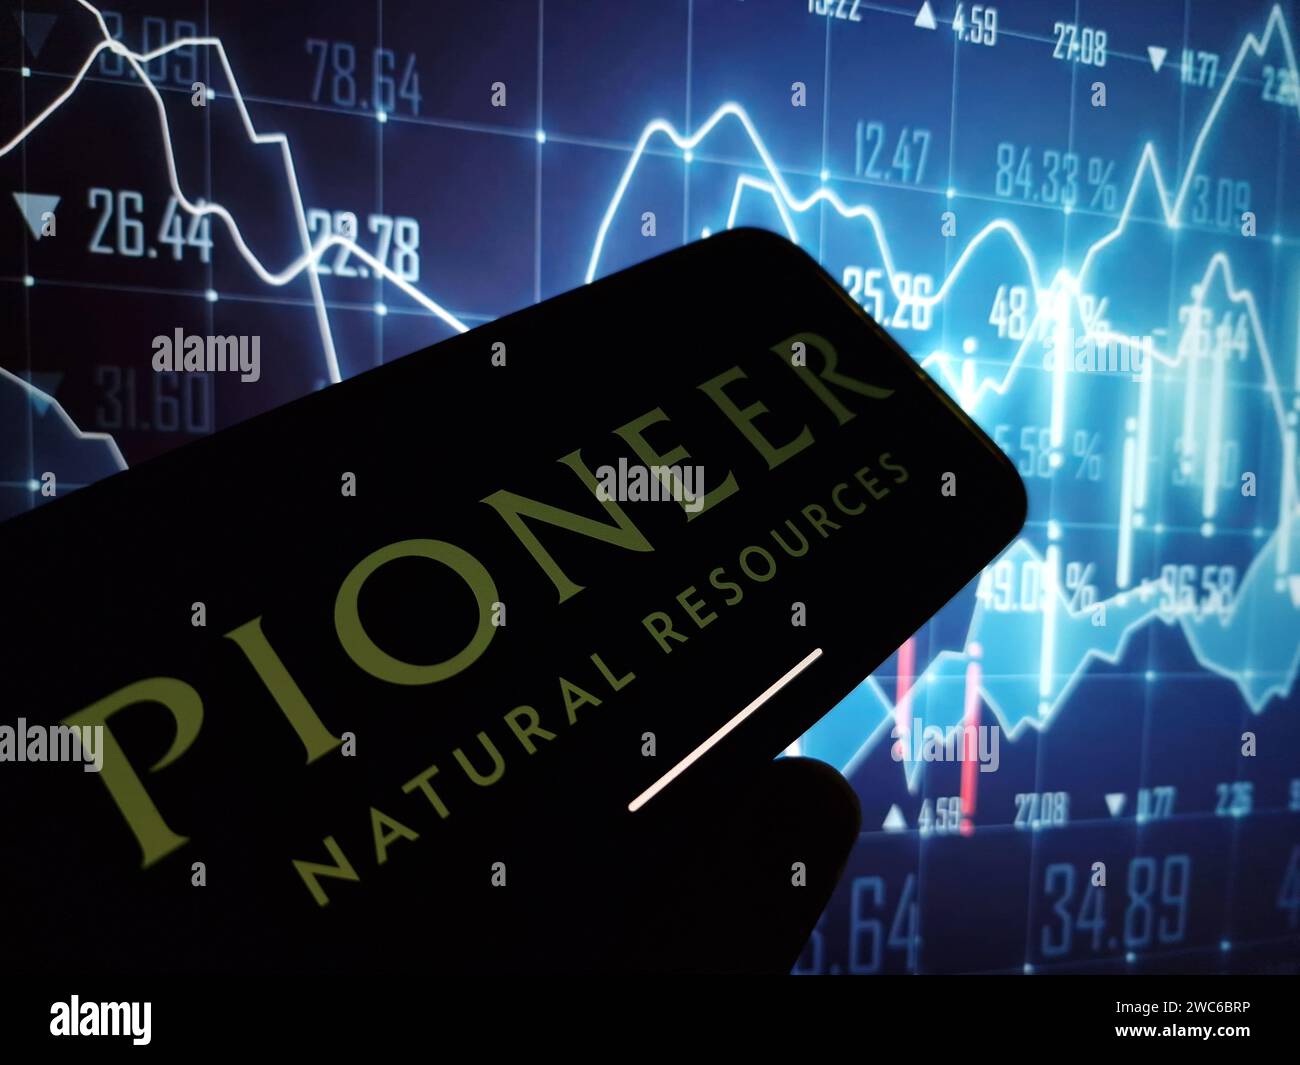 KONSKIE, Pologne - 13 janvier 2024 : logo de la société Pioneer Natural Resources affiché sur l'écran du téléphone portable Banque D'Images